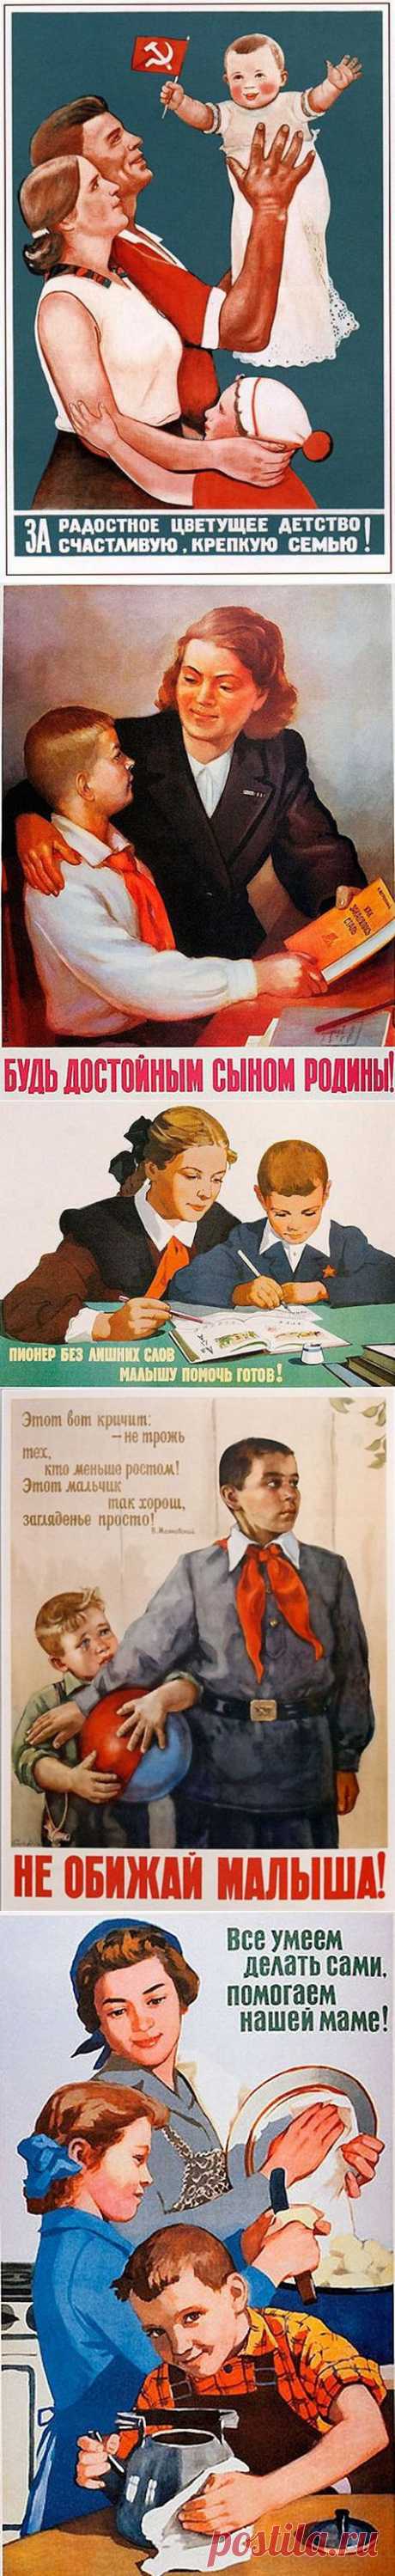 Что стремились воспитать в советских детях? | Любители истории